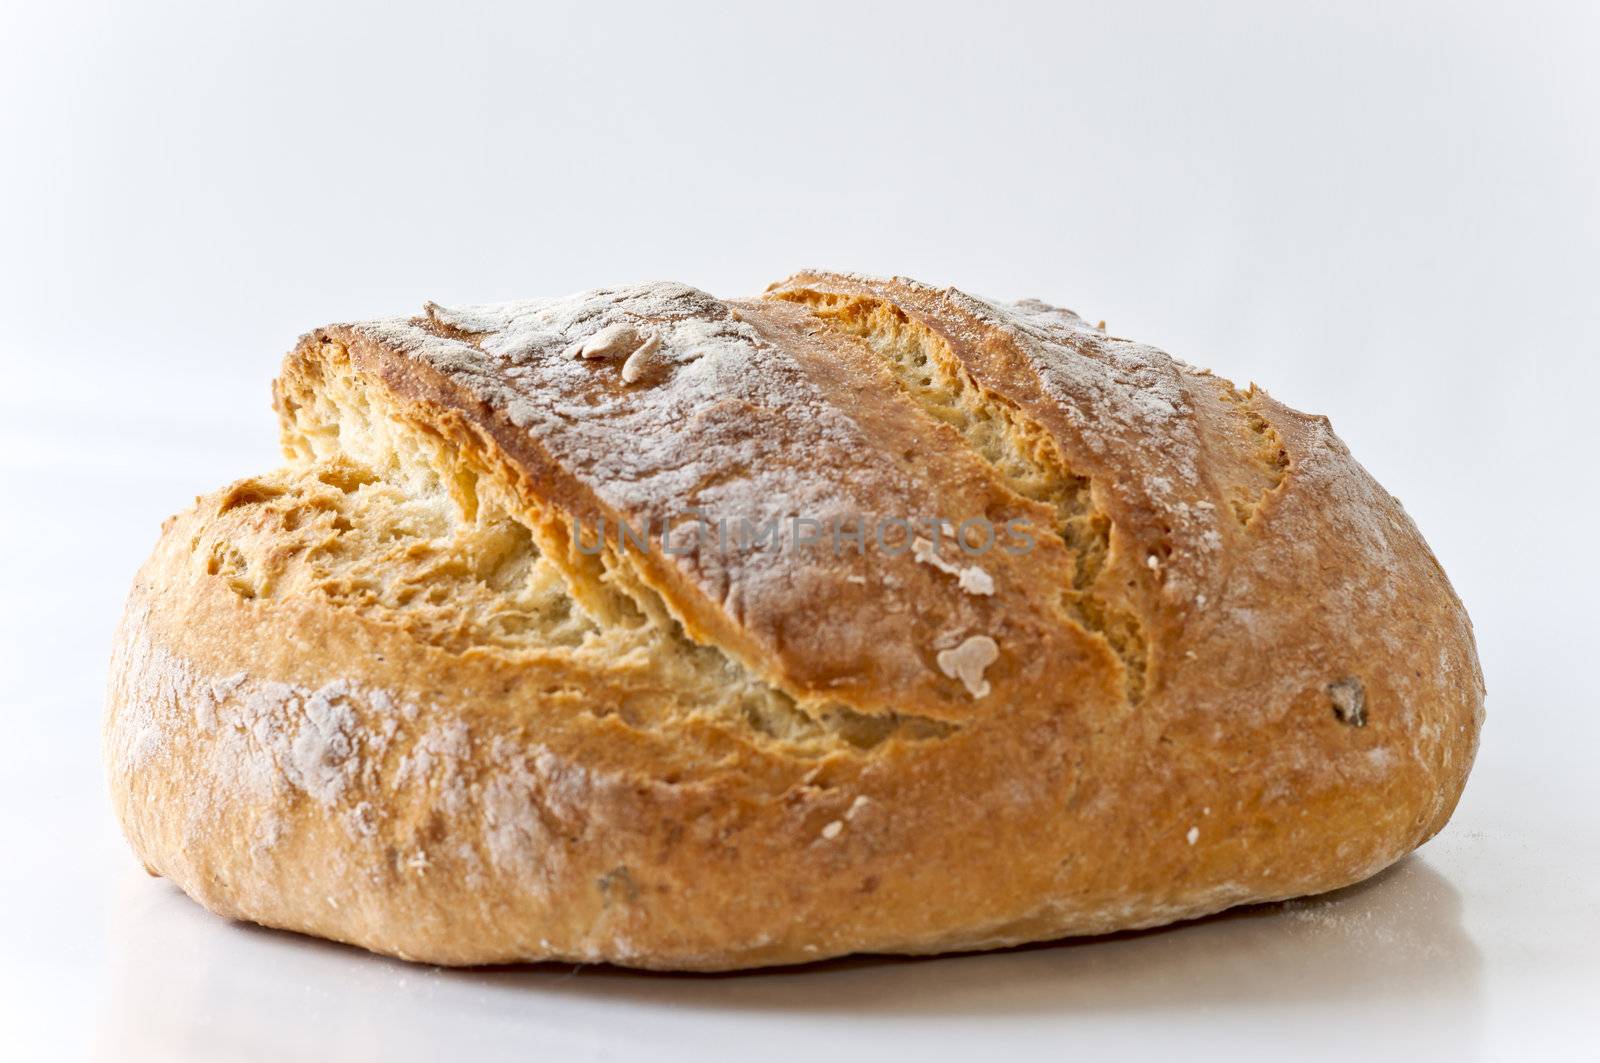 Honey white bread with poolish on white background close up